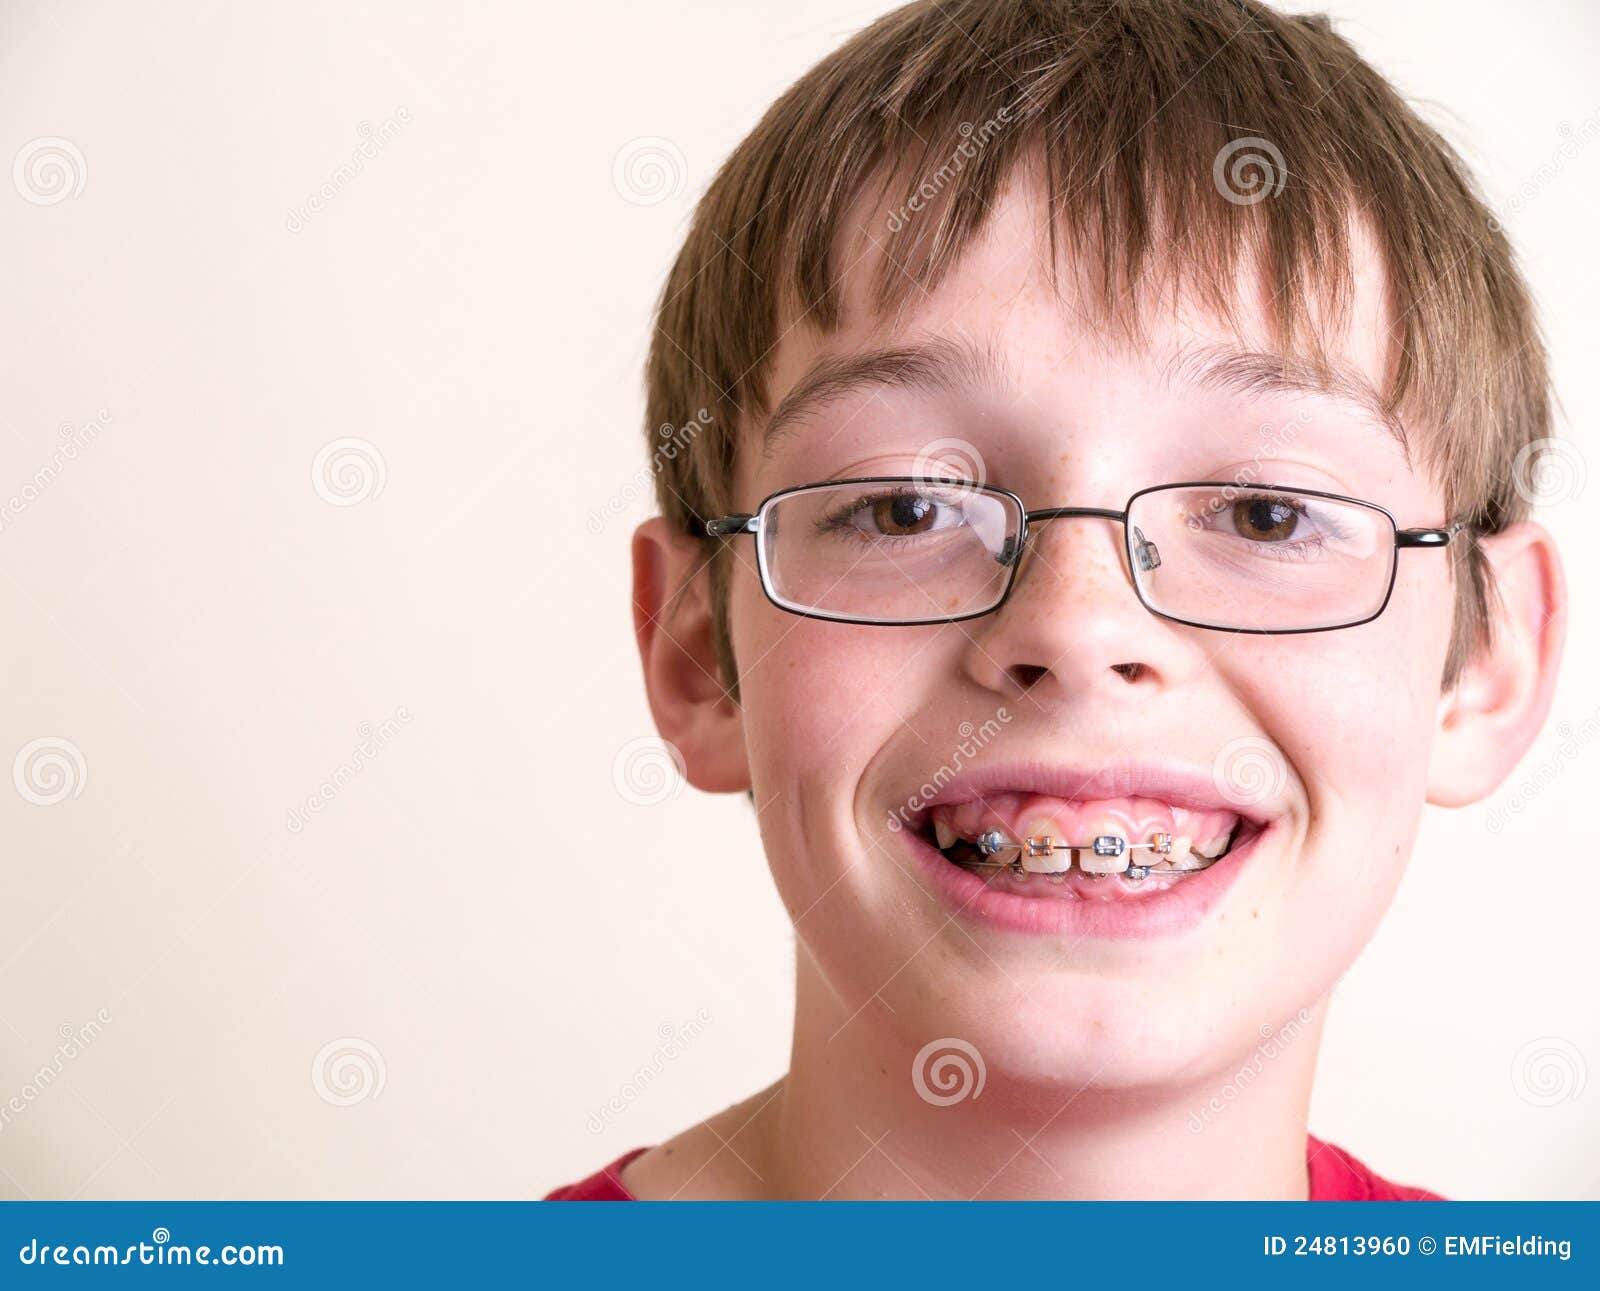 Зубы у подростков. Частичная брекет-система 2x4. Зубы подростка.